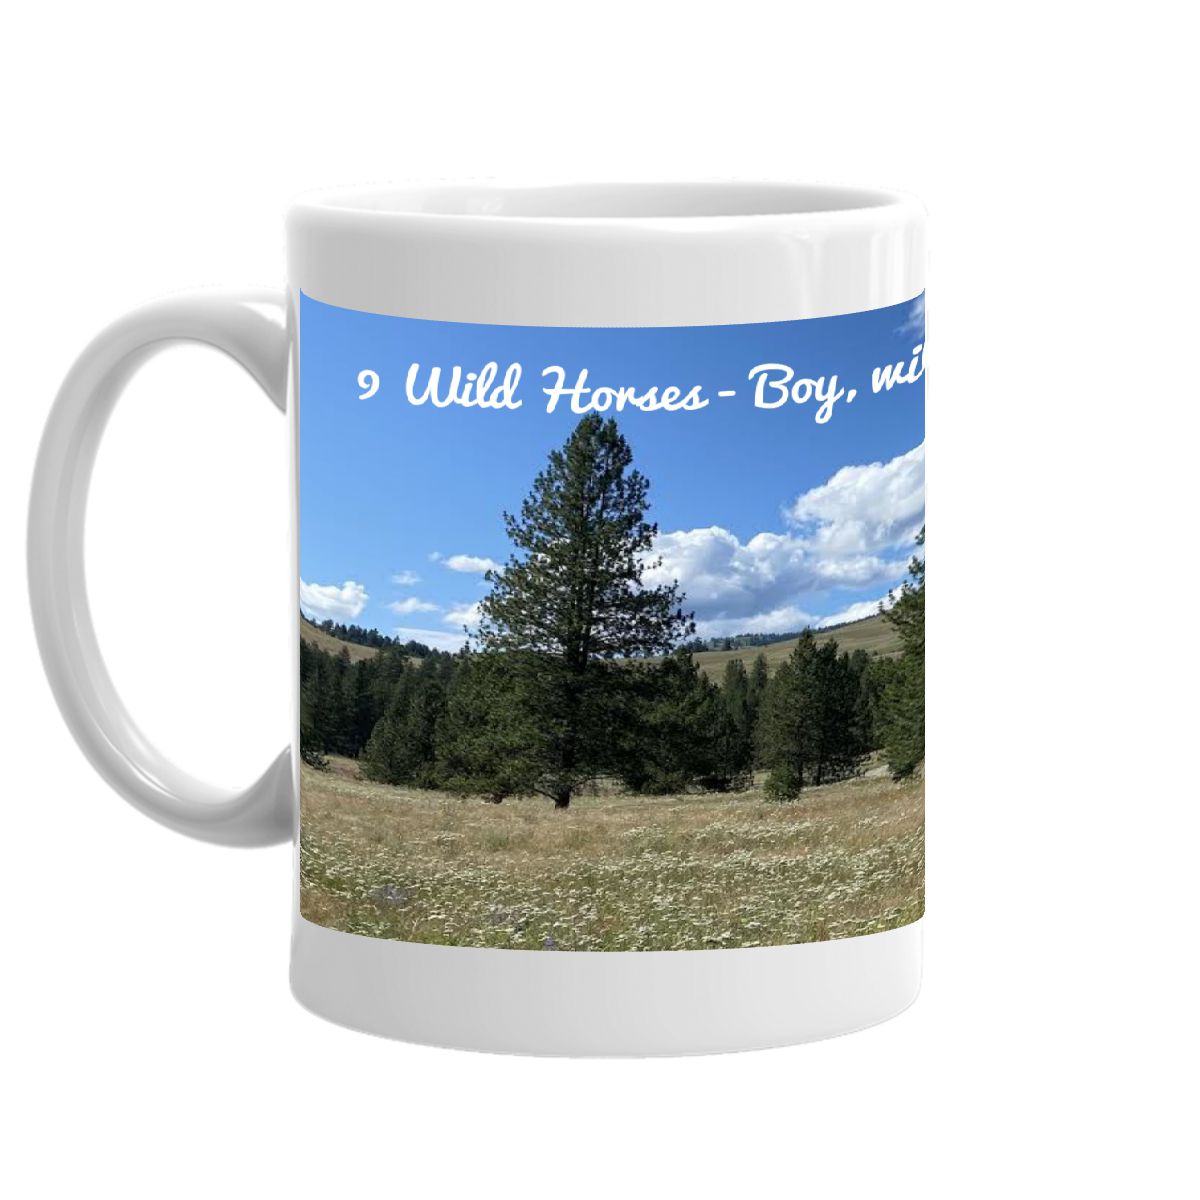 9 Wild Horses 15 oz coffee mug with Boy